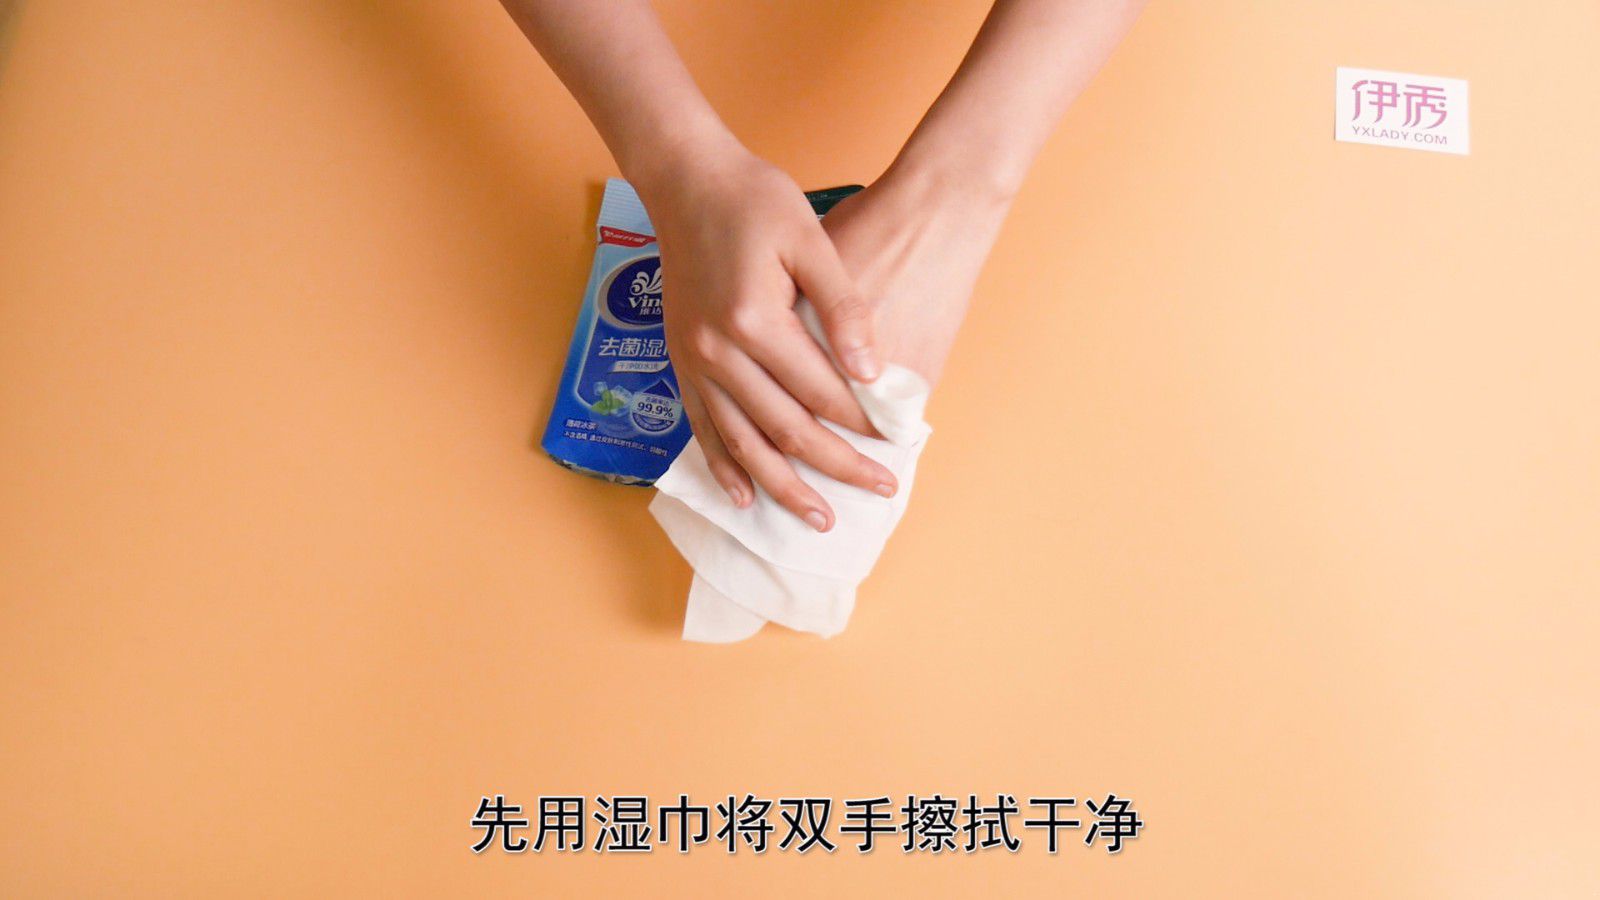 先用湿巾将双手擦拭干净.